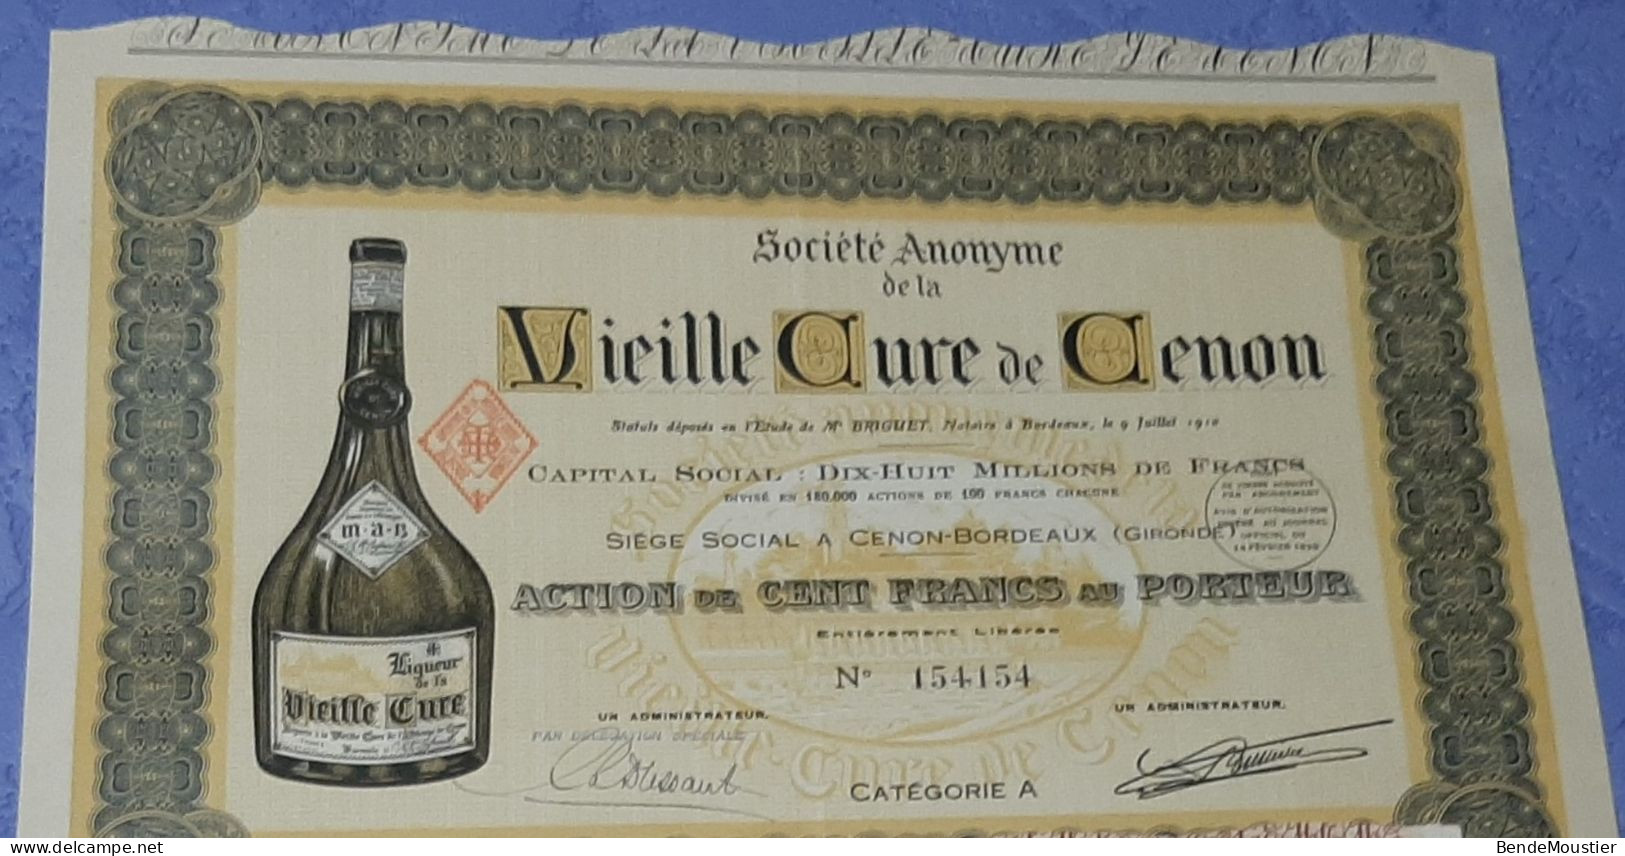 Vieille Cure De Cenon - Action De 2500 Frs - Action De 100 Frs Au Porteur - Cenon-Bordeaux - Gironde 1910 & 1952. - Agricultura